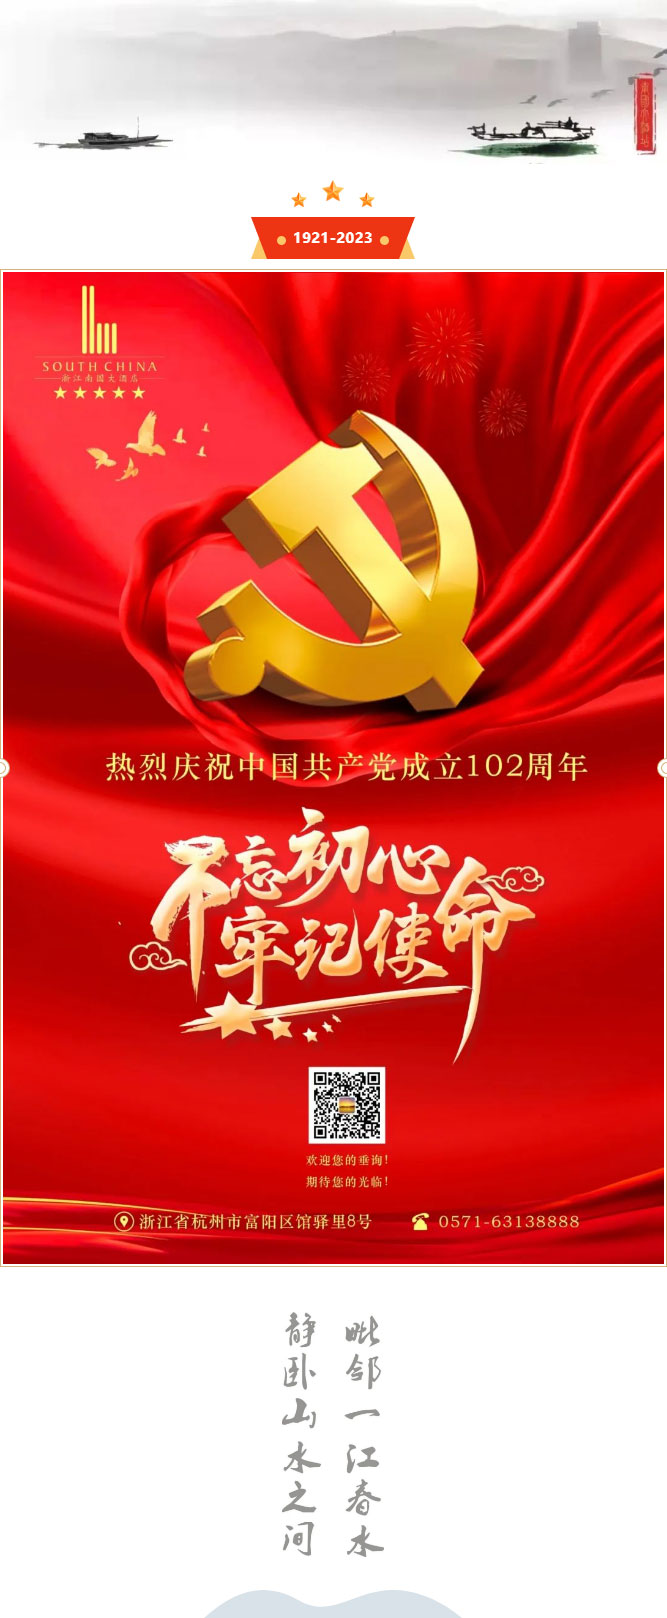 浙江南国大酒店热烈庆祝中国共产党成立102周年.jpg